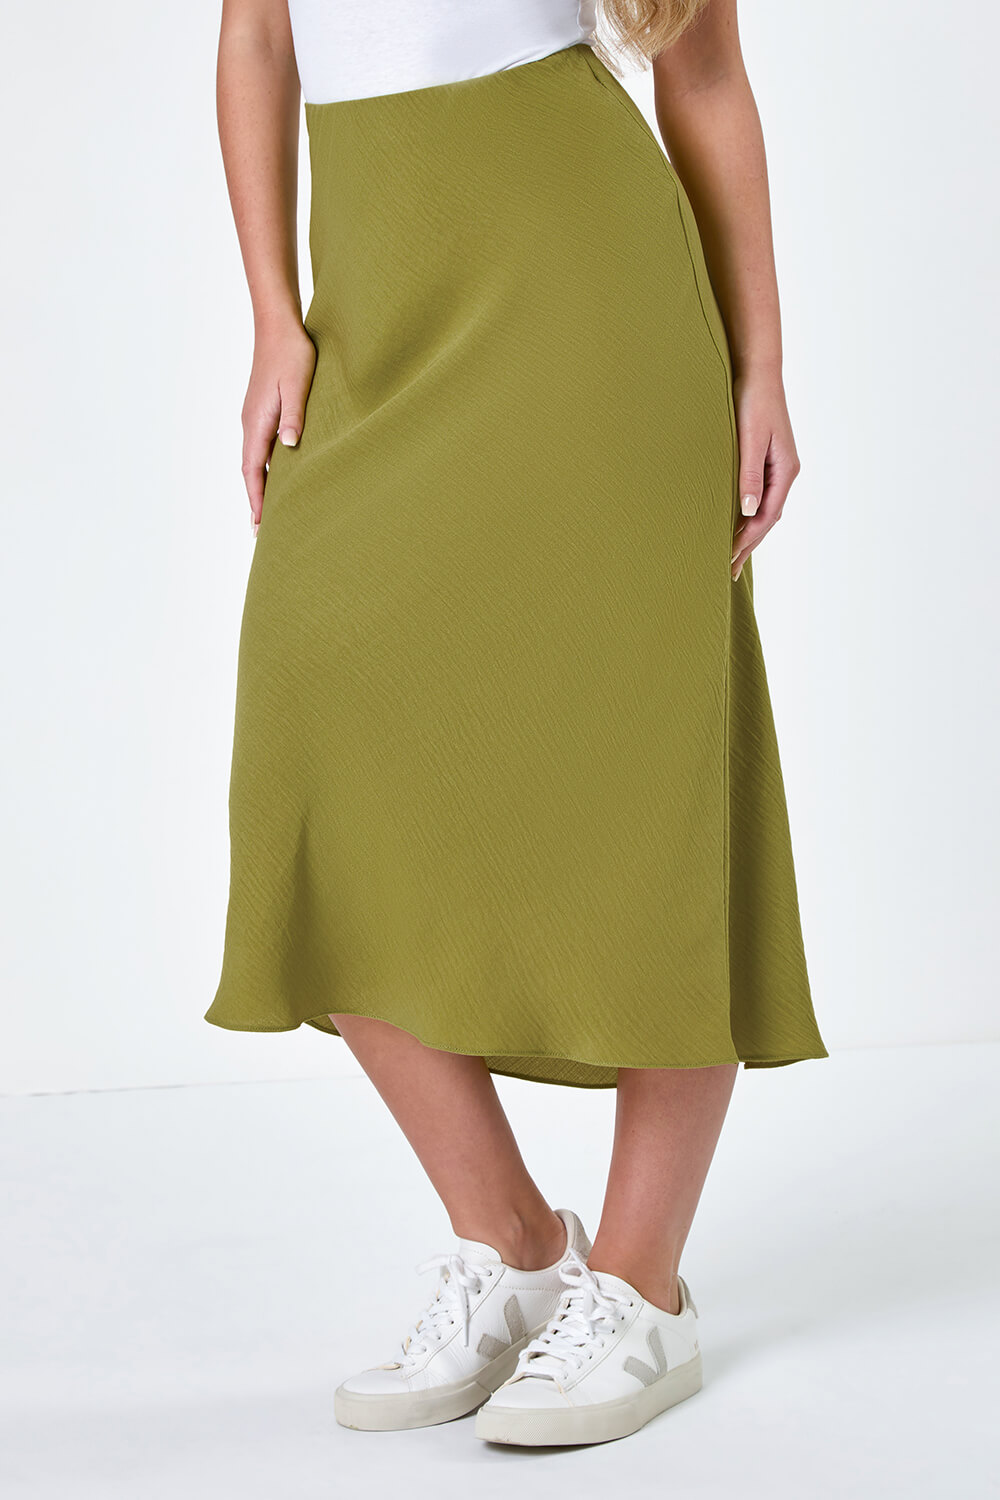 Olive Petite Plain Bias Cut Midi Skirt, Image 4 of 5